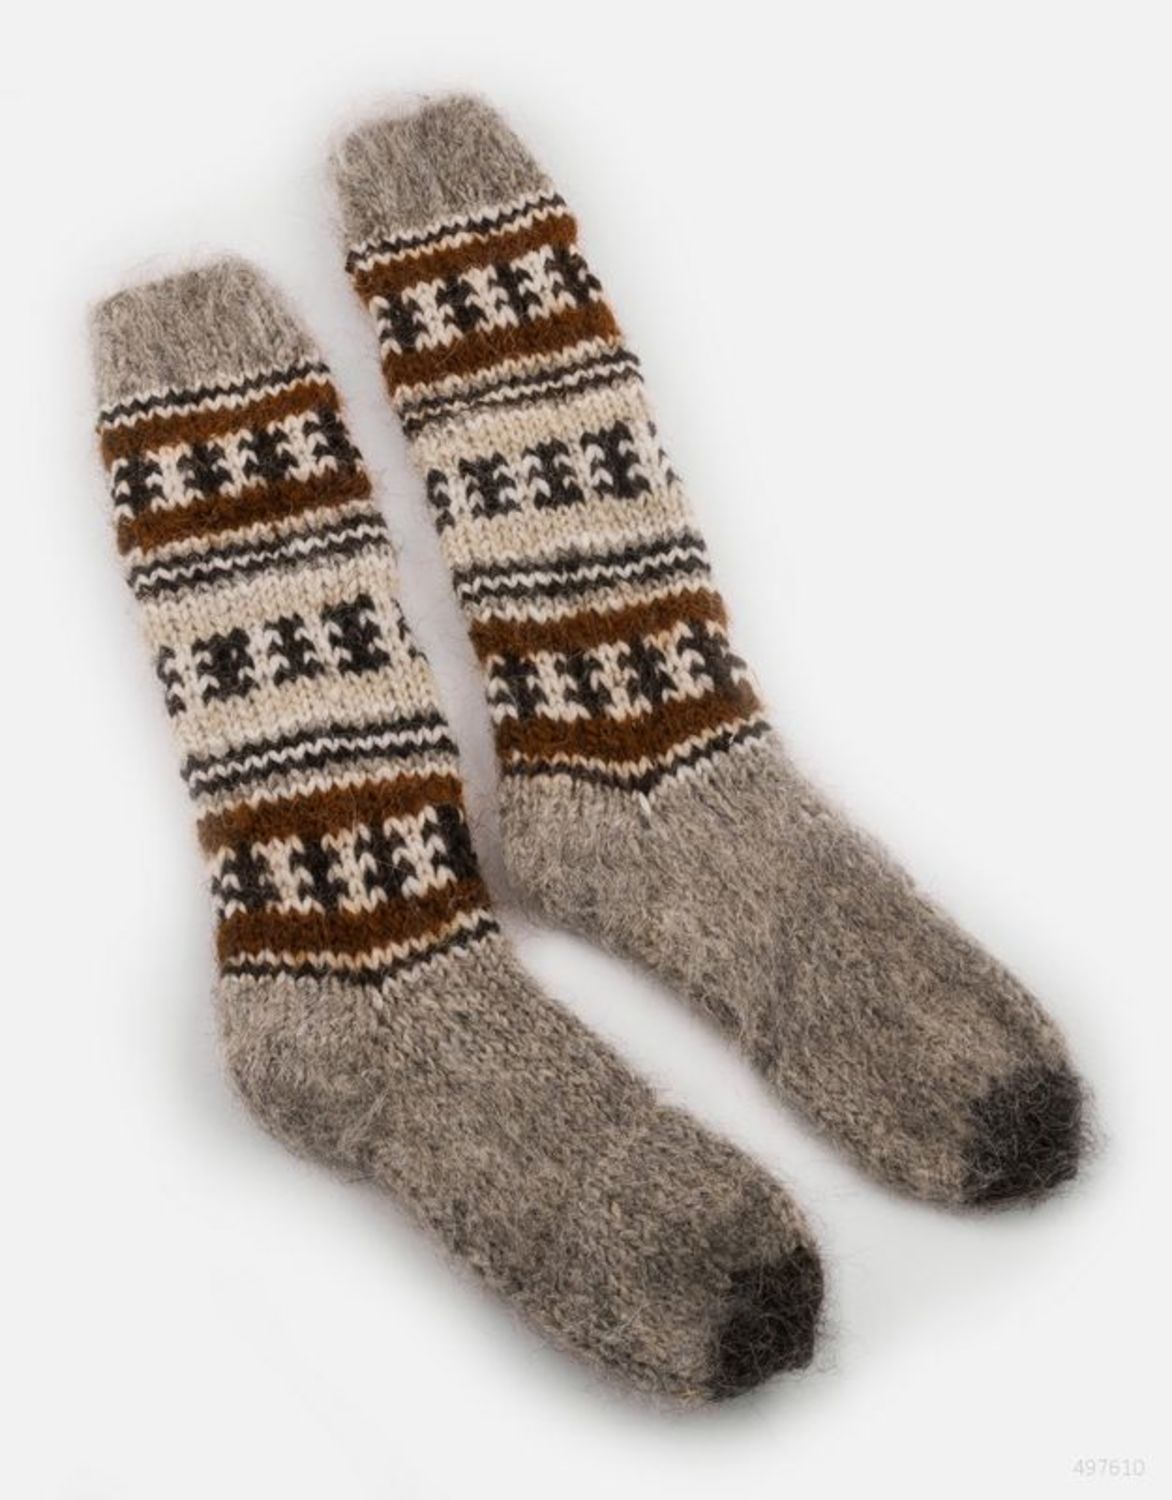 Woolen socks photo 2